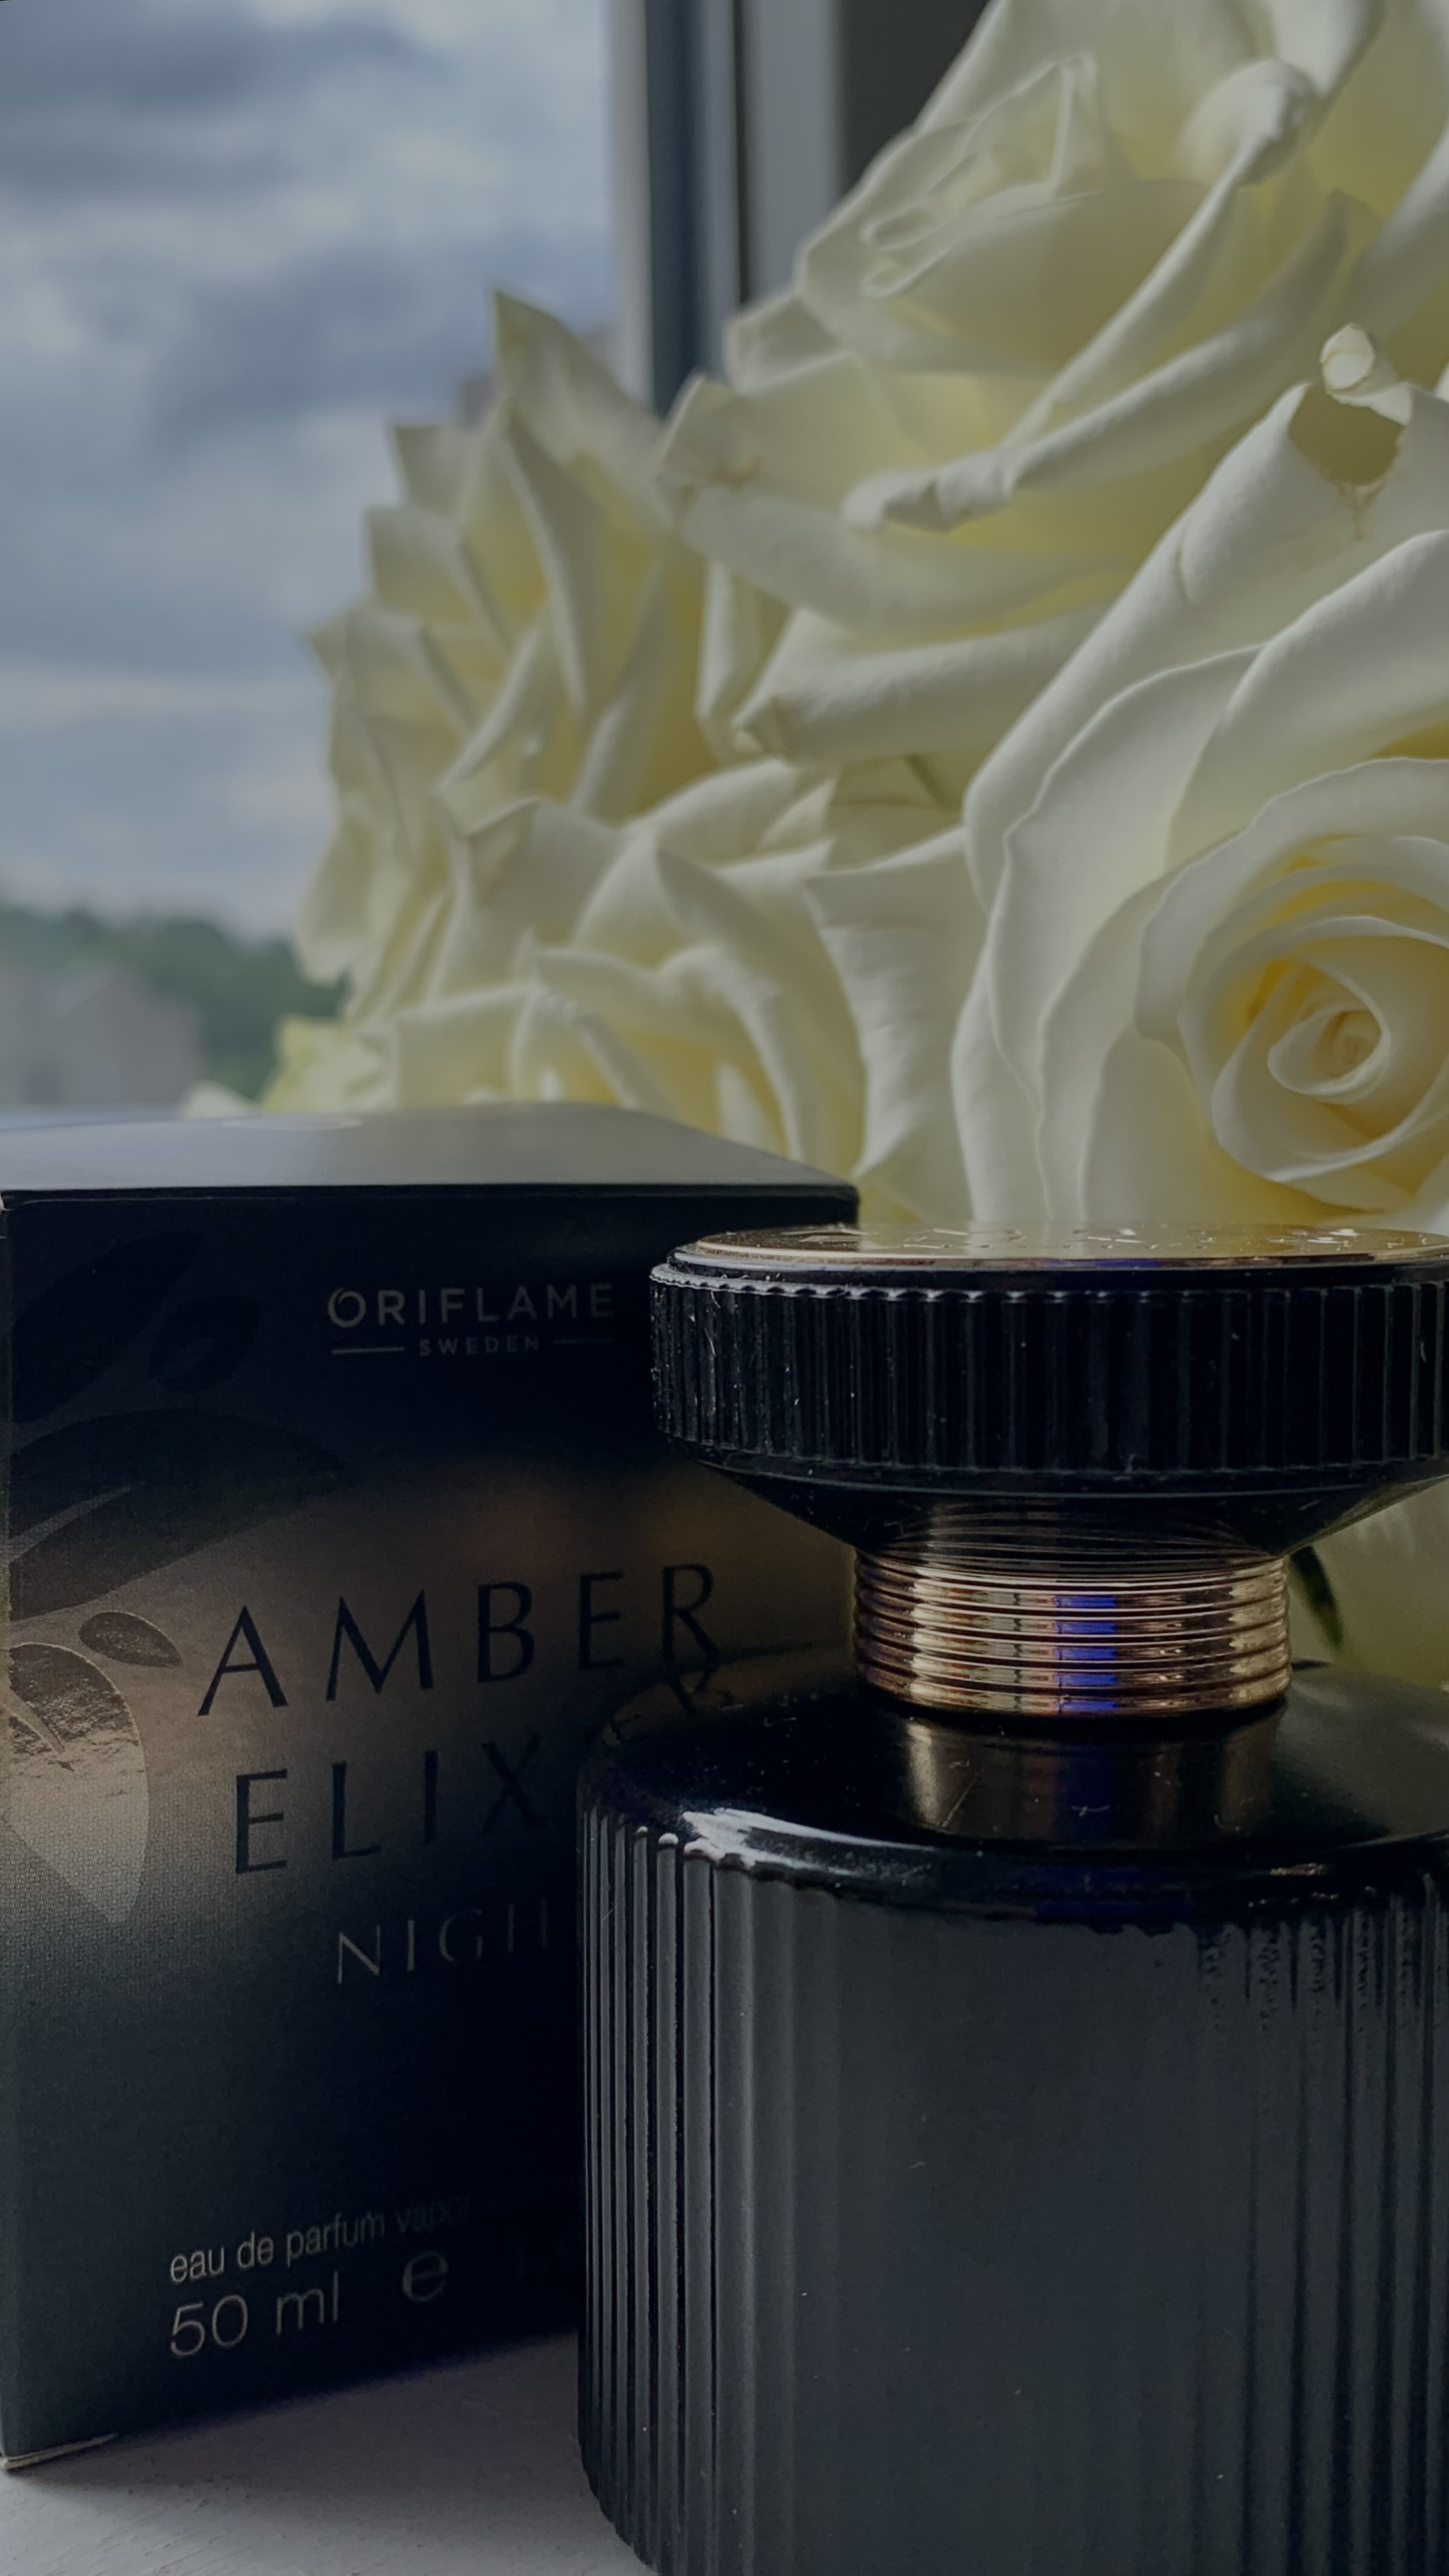 Amber Elixir Night Oriflame